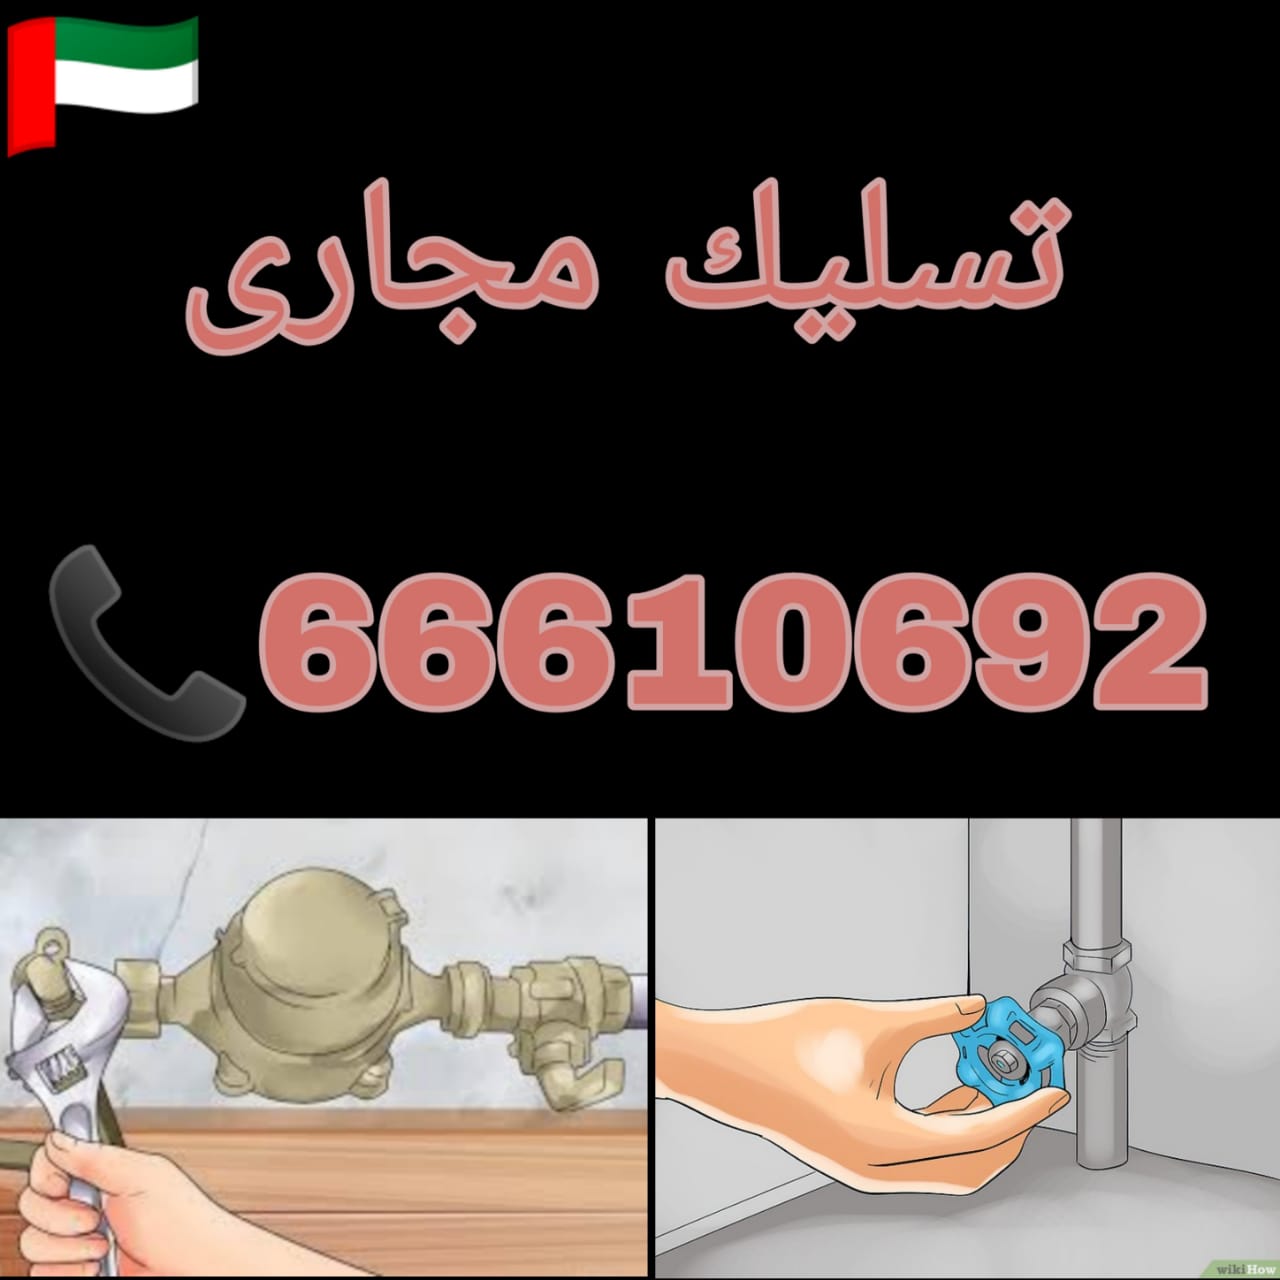 تسليك مجاري الزهراء / 66610692 / صيانة وتركيب فني صحي بالكويت